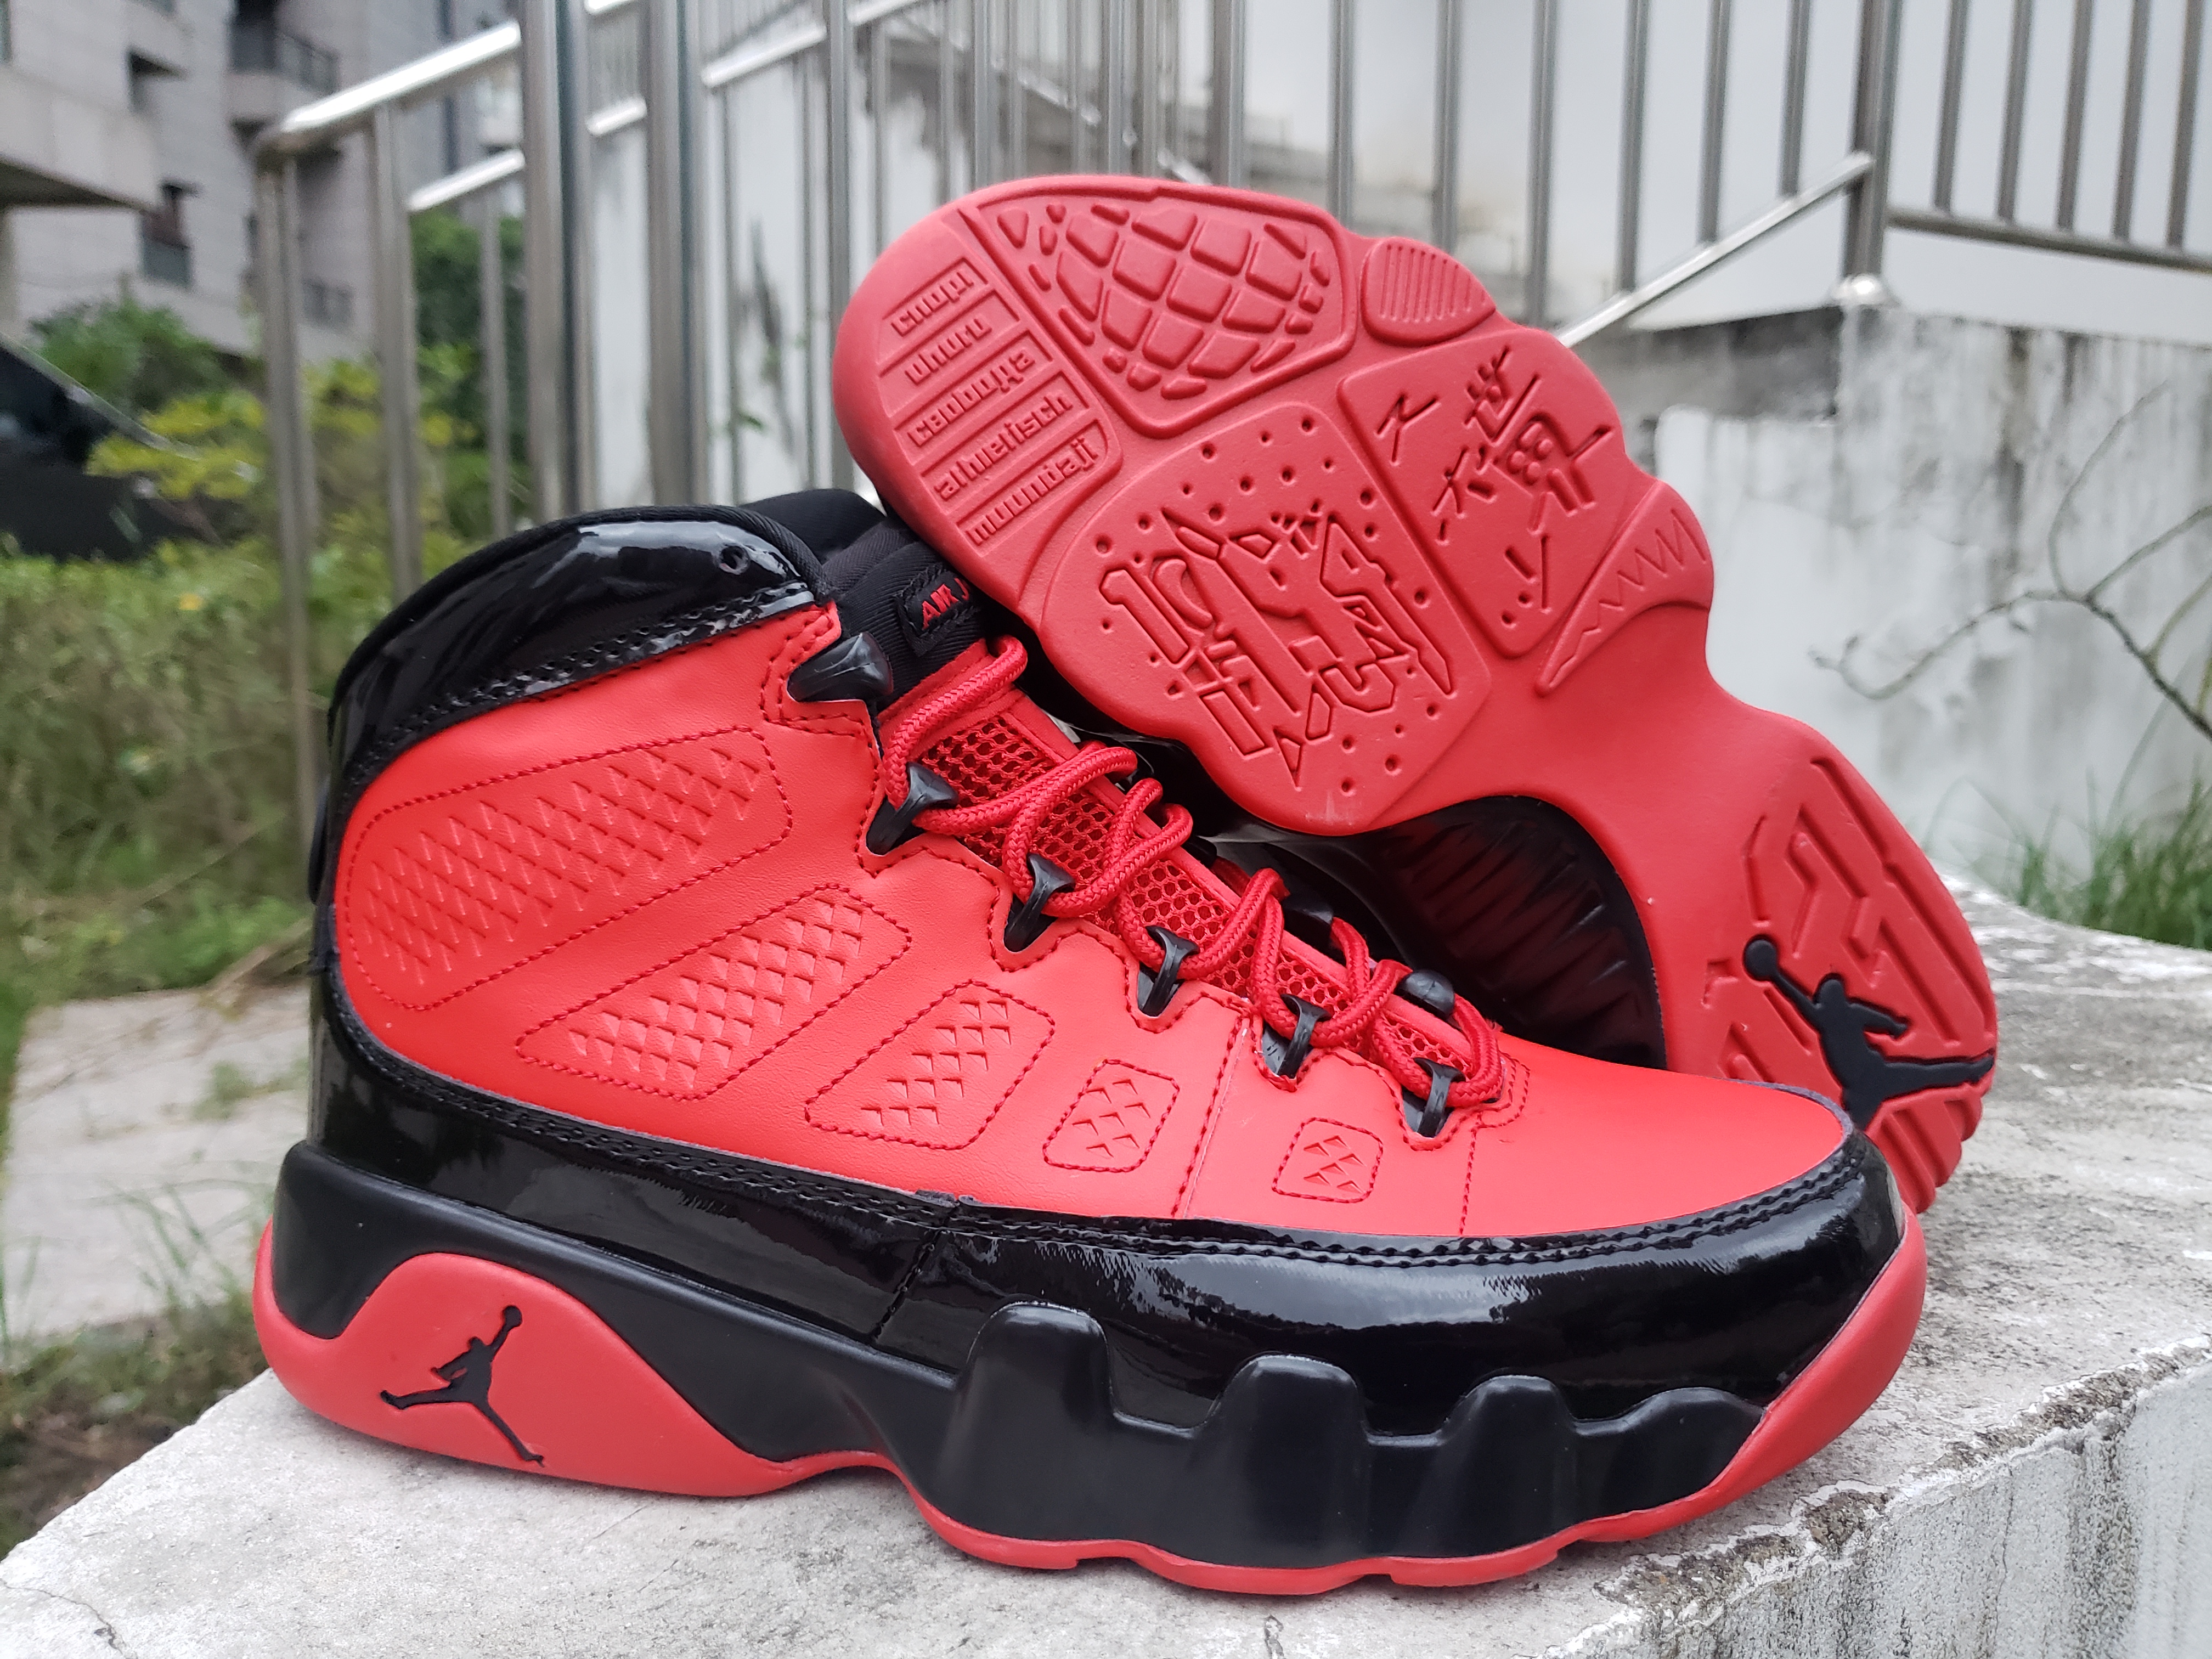 New Men Air Jordan 9 Retro Red Black Shoes